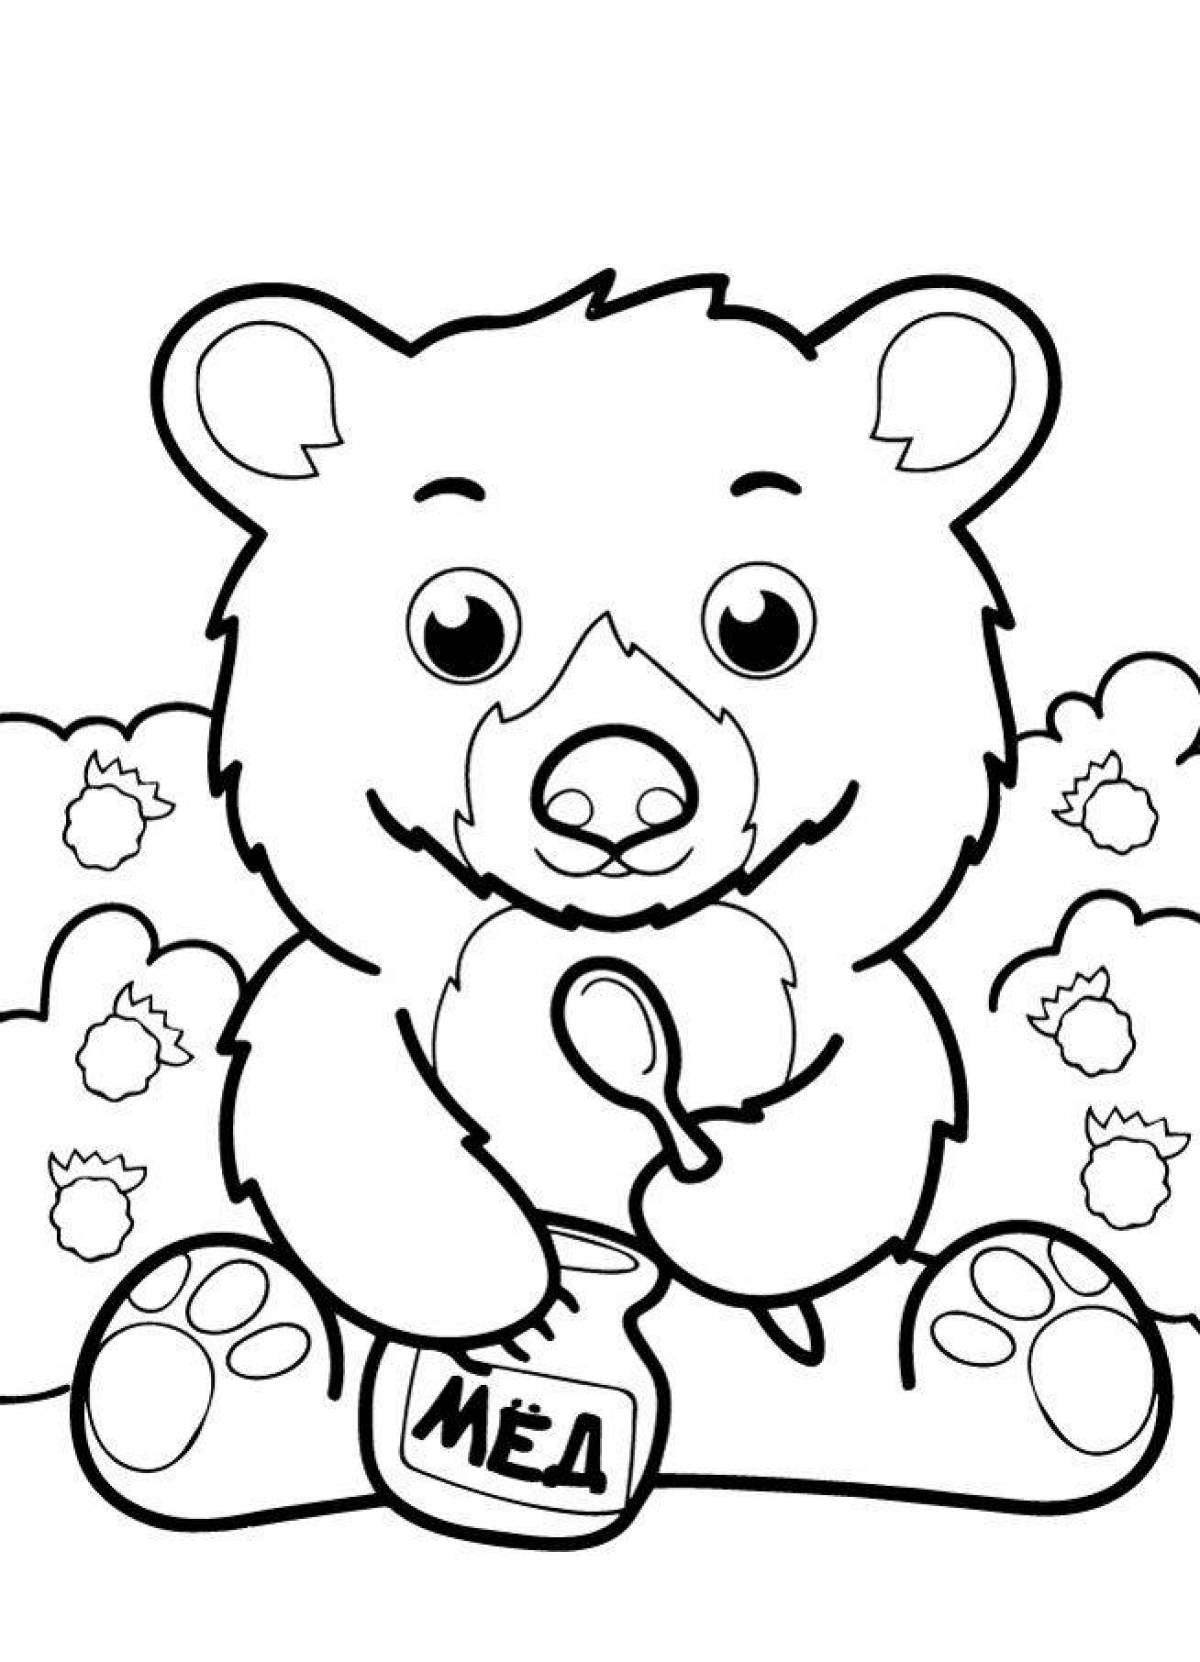 Распечатка медведя. Раскраска. Медвежонок. Раскраска медвежоночек. Медвежонок раскраска для детей. Медведь раскраска.